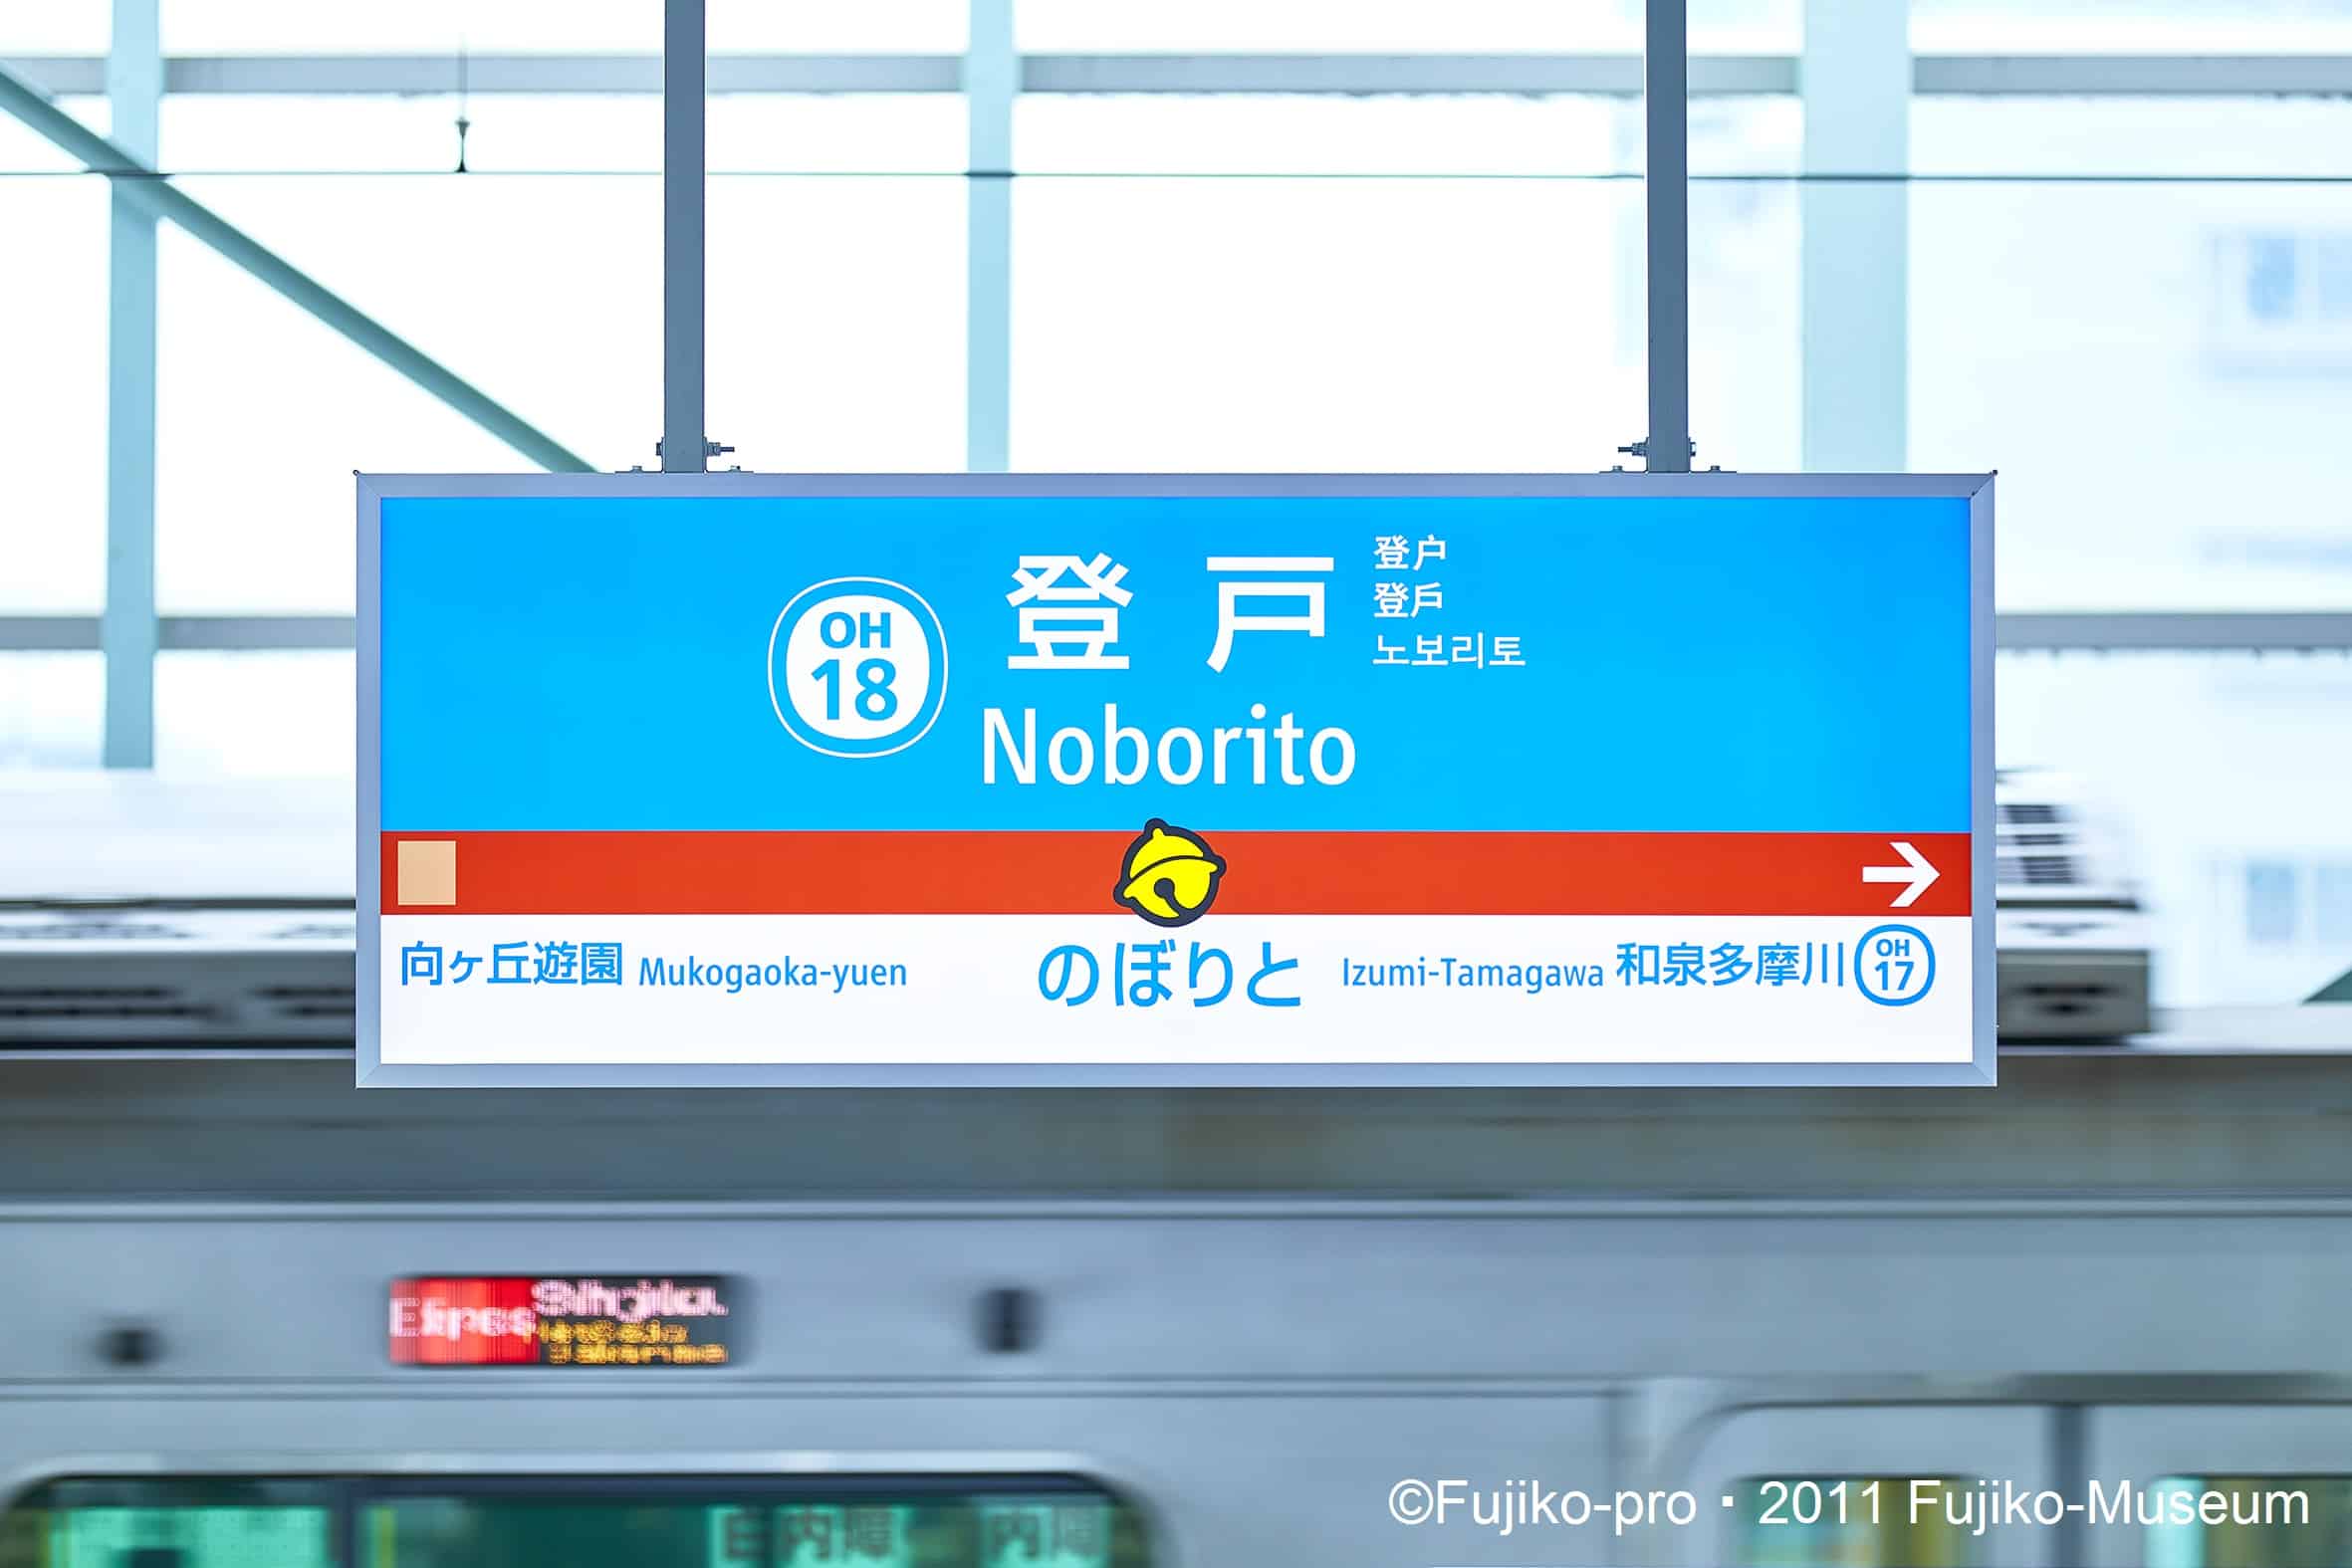 นั่งรถไฟ โอดะคิว (Odakyu) ลงสถานีโนโบริโตะ ไป พิพิธภัณฑ์ฟูจิโกะ เอฟ ฟูจิโอะ